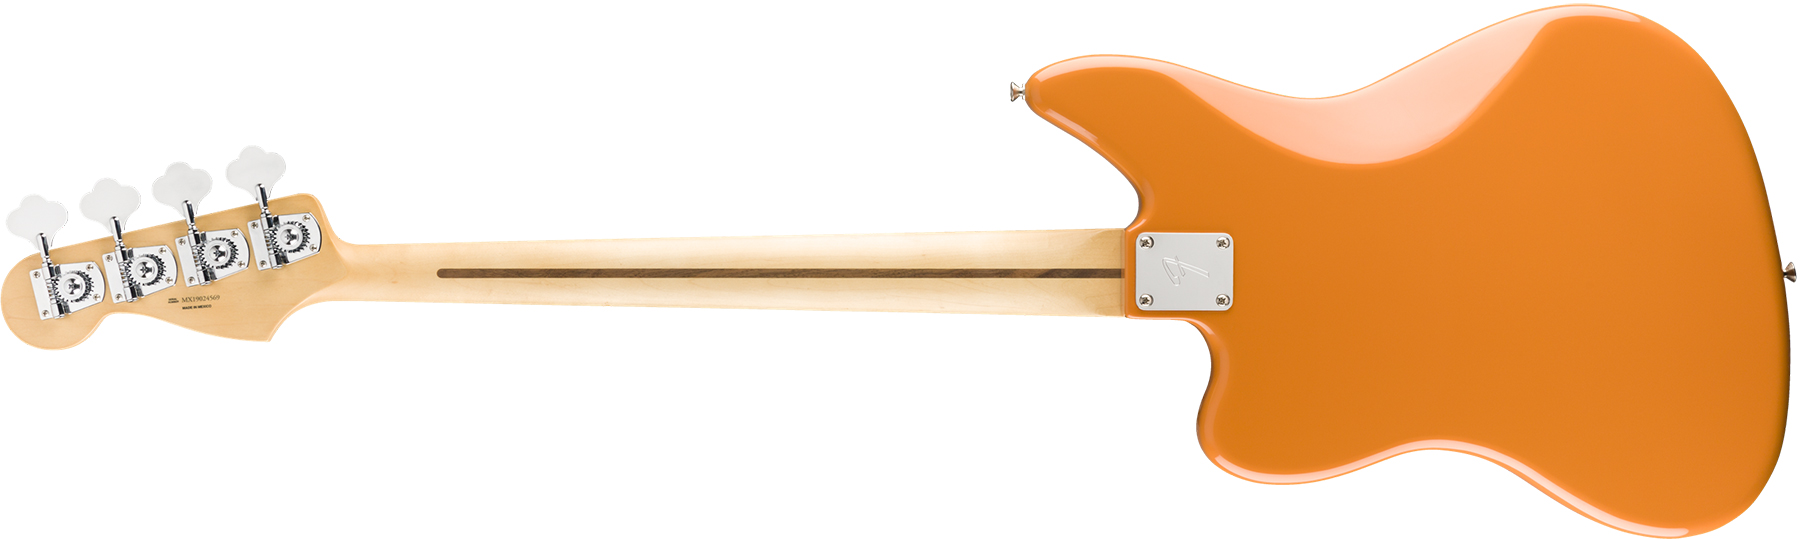 Fender Jaguar Bass Player Mex Mn - Capri Orange - Bajo eléctrico de cuerpo sólido - Variation 1